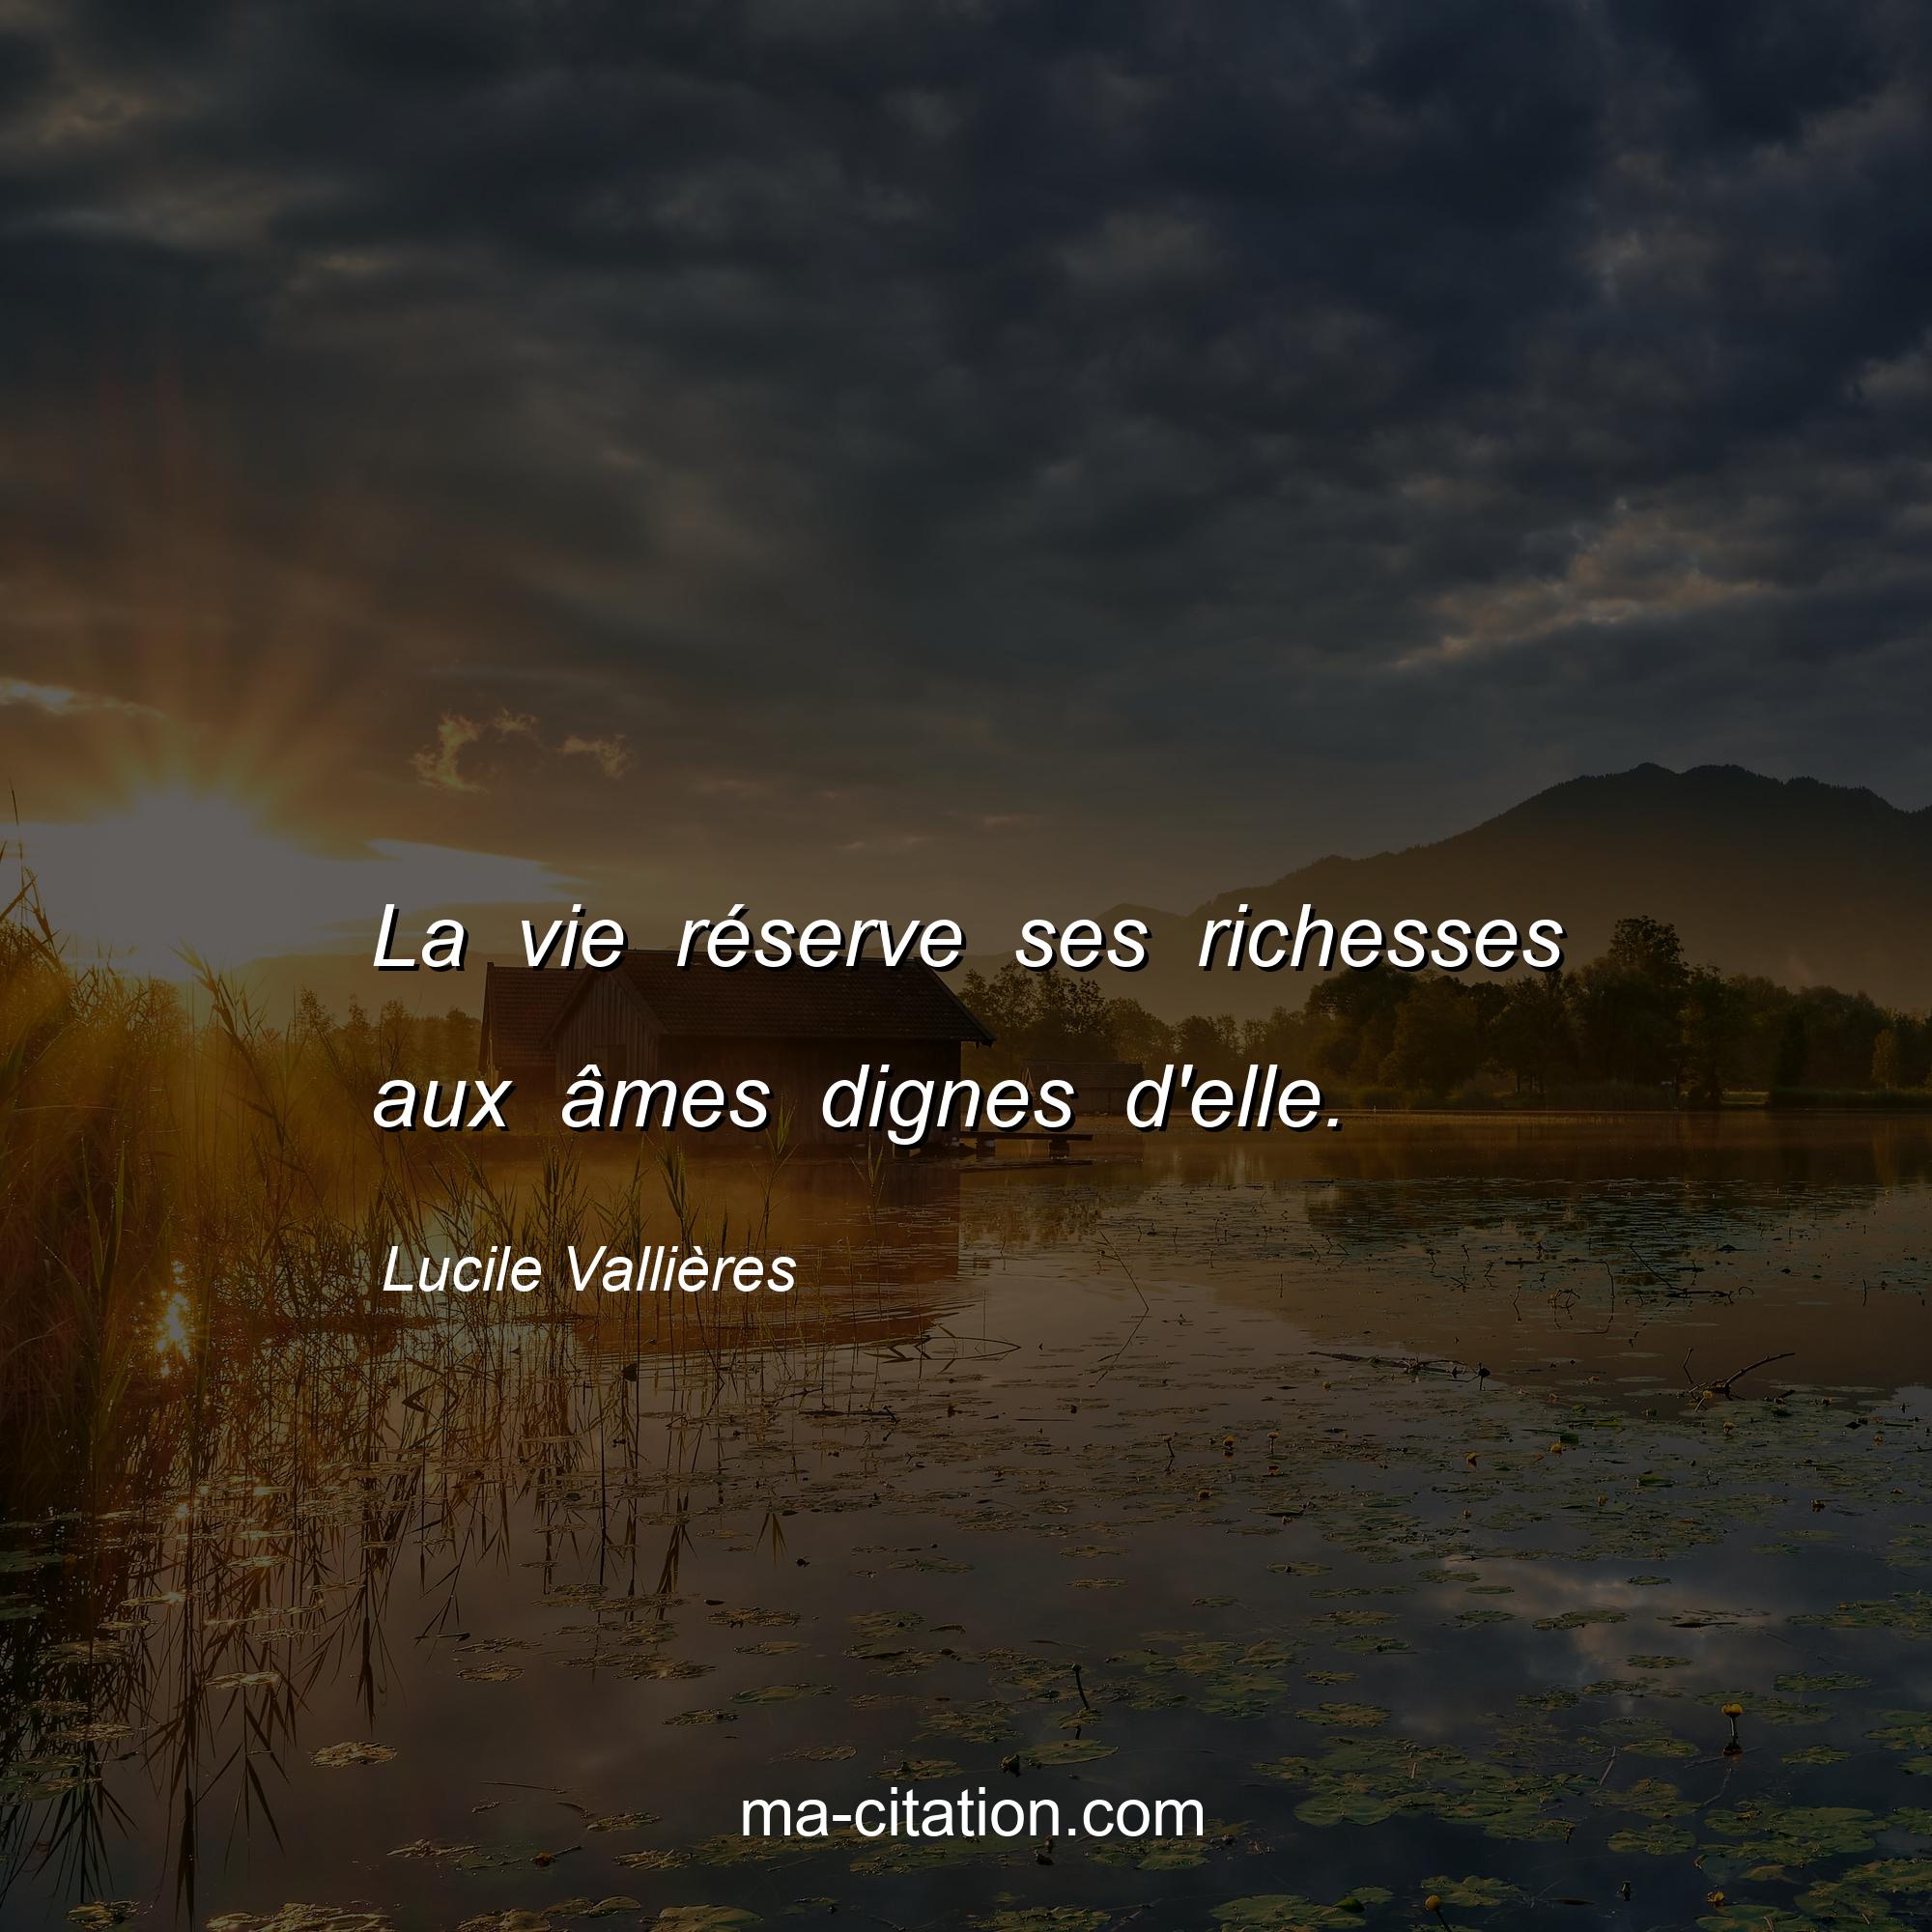 Lucile Vallières : La vie réserve ses richesses aux âmes dignes d'elle.